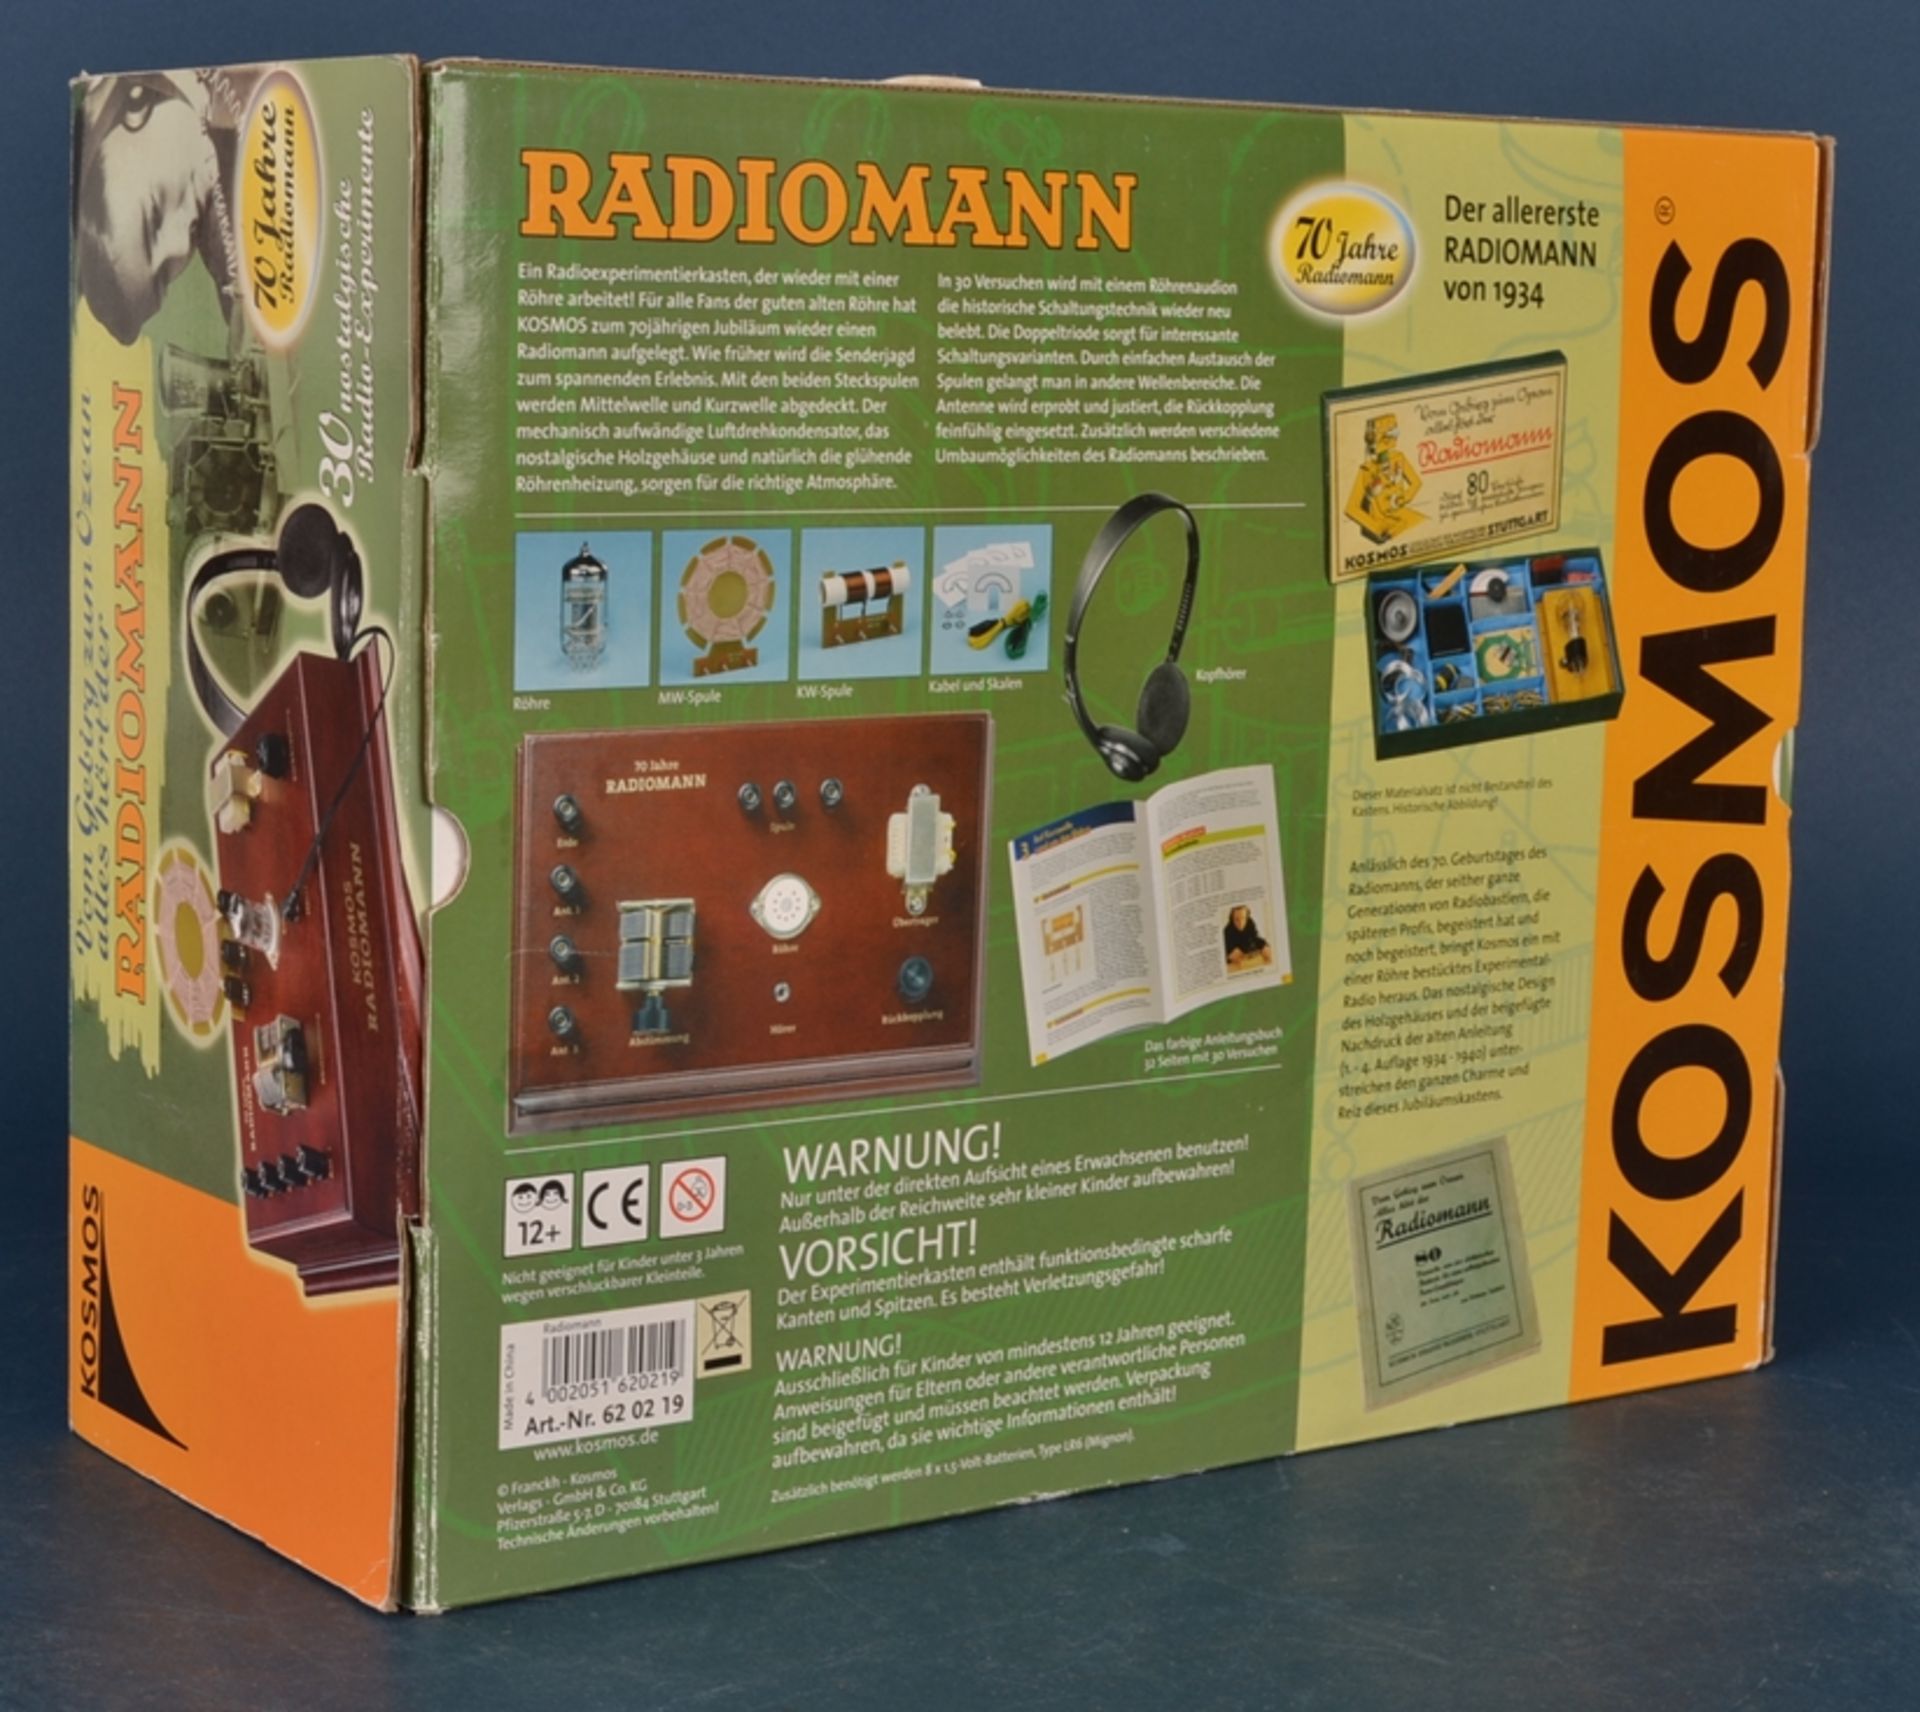 RADIOMANN - KOSMOS. Experimentierkasten 2004. Unbespielt, noch in Folie eingeschweißt, orig. - Bild 4 aus 6